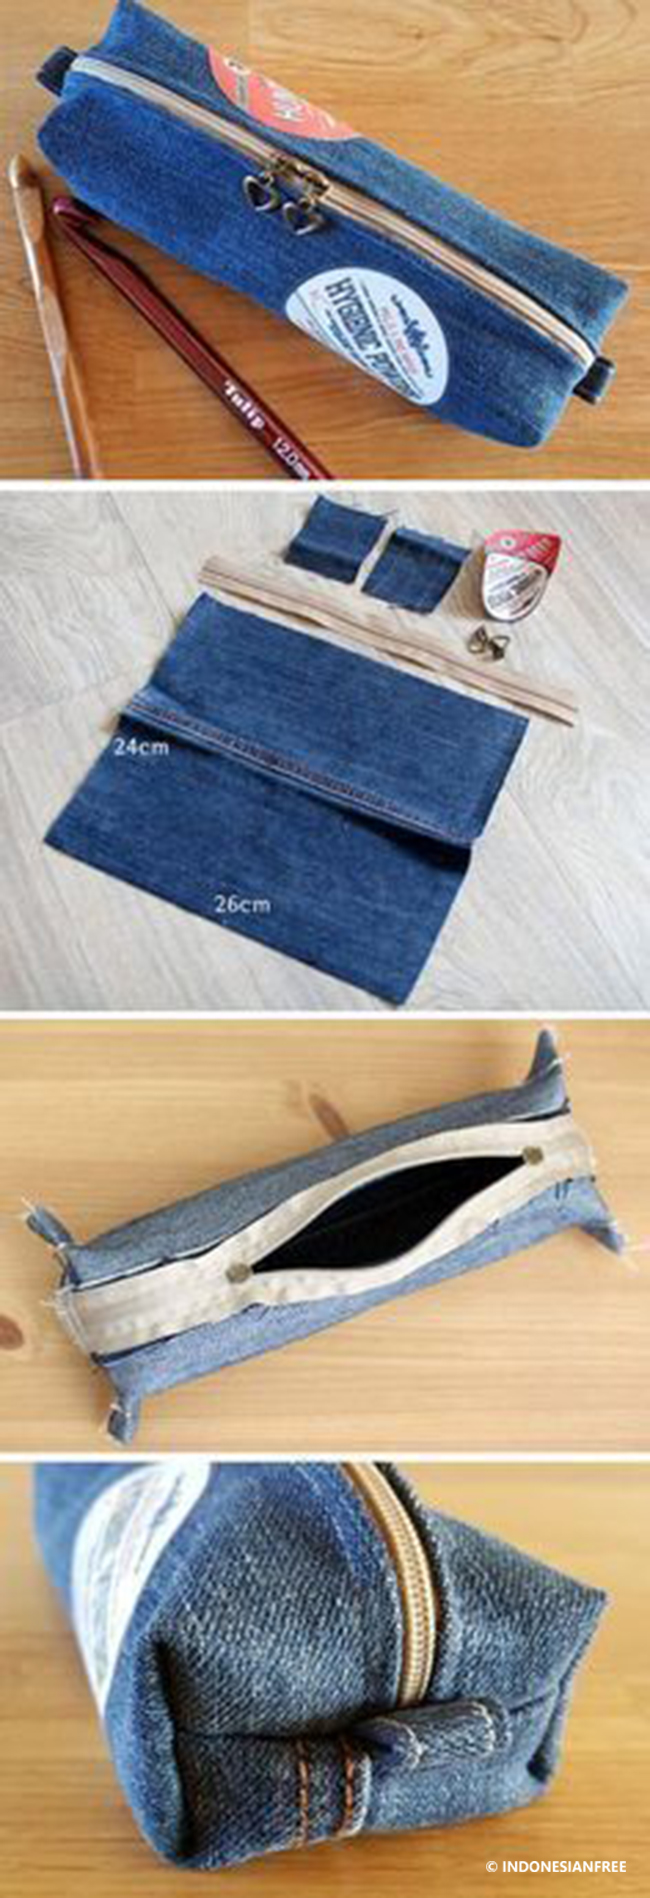 cara membuat dompet dari celana jeans bekas